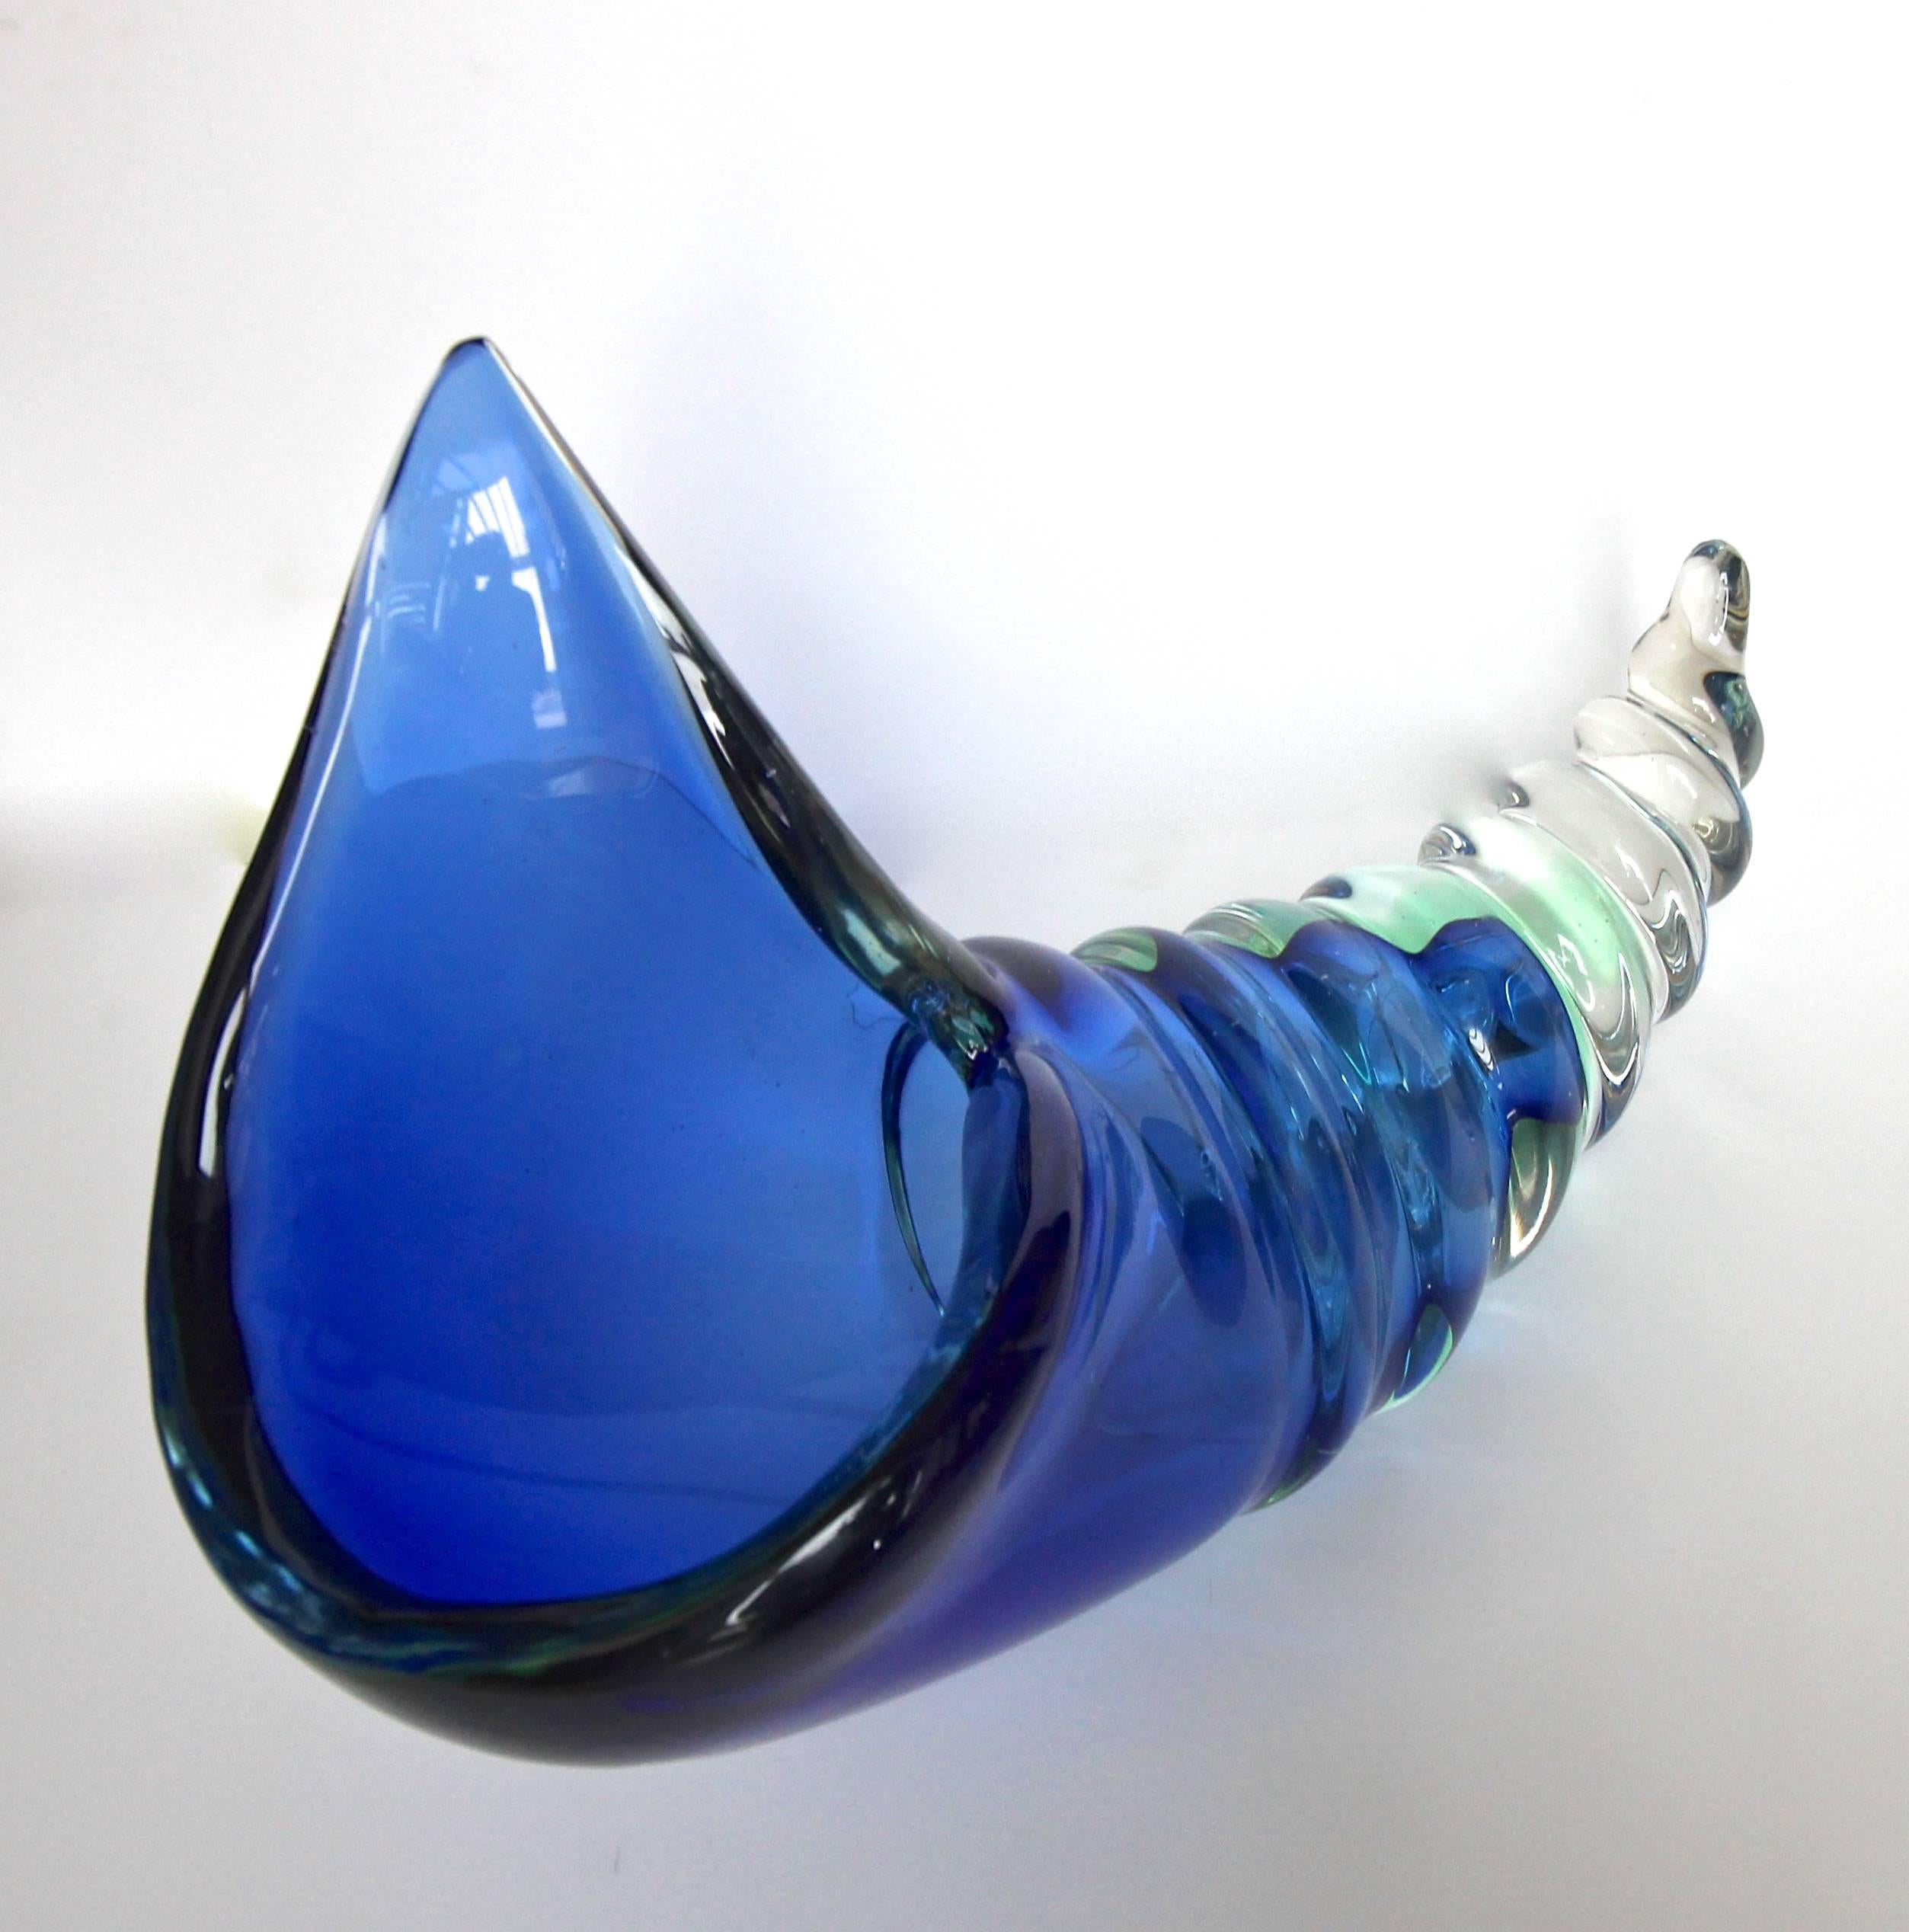 Grand centre de table en verre italien Seguso Murano Sommerso en forme de coquillage ou de conque. Verre épais soufflé à la main de couleur bleu riche avec des teintes subtiles de vert agua. Le poids est lourd et les portions globales sont